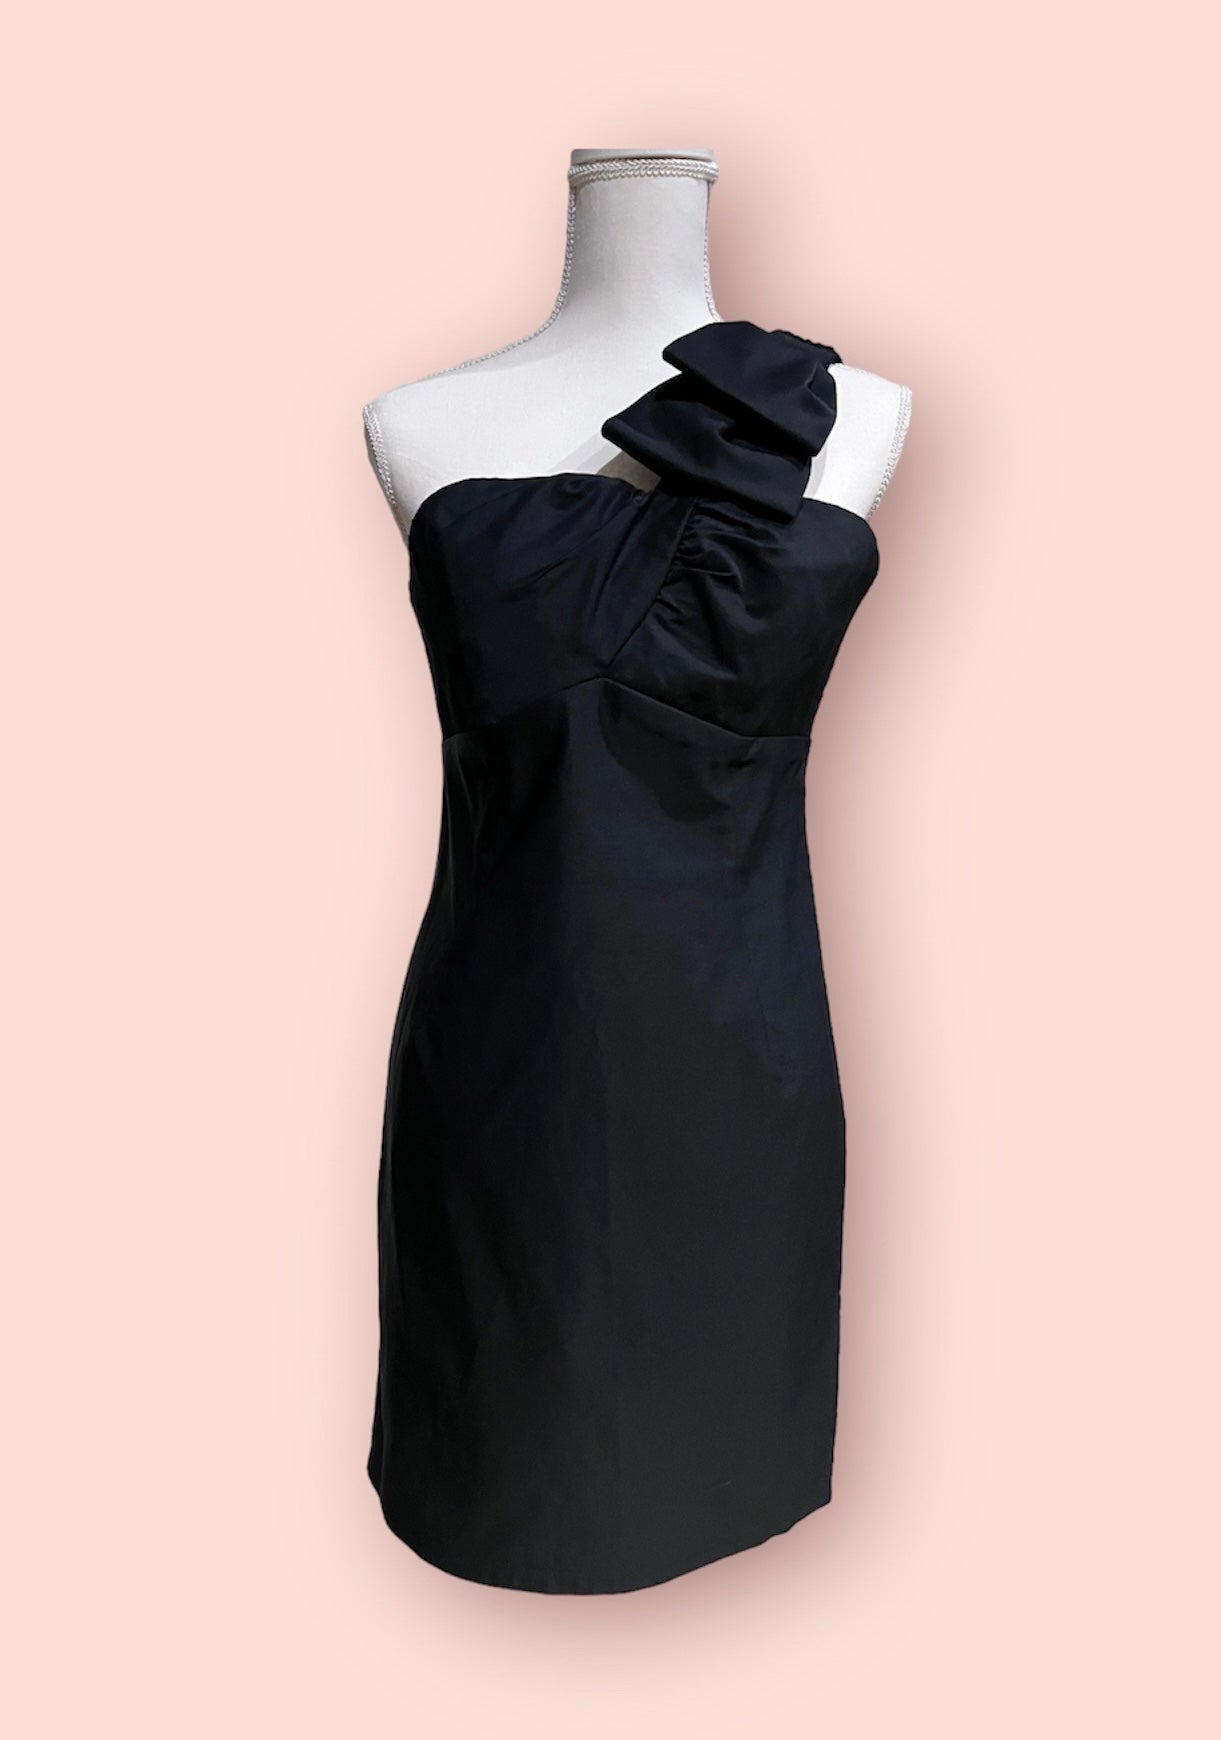 Kaya Bow One Shoulder Dress - One shoulder dress - essecoco